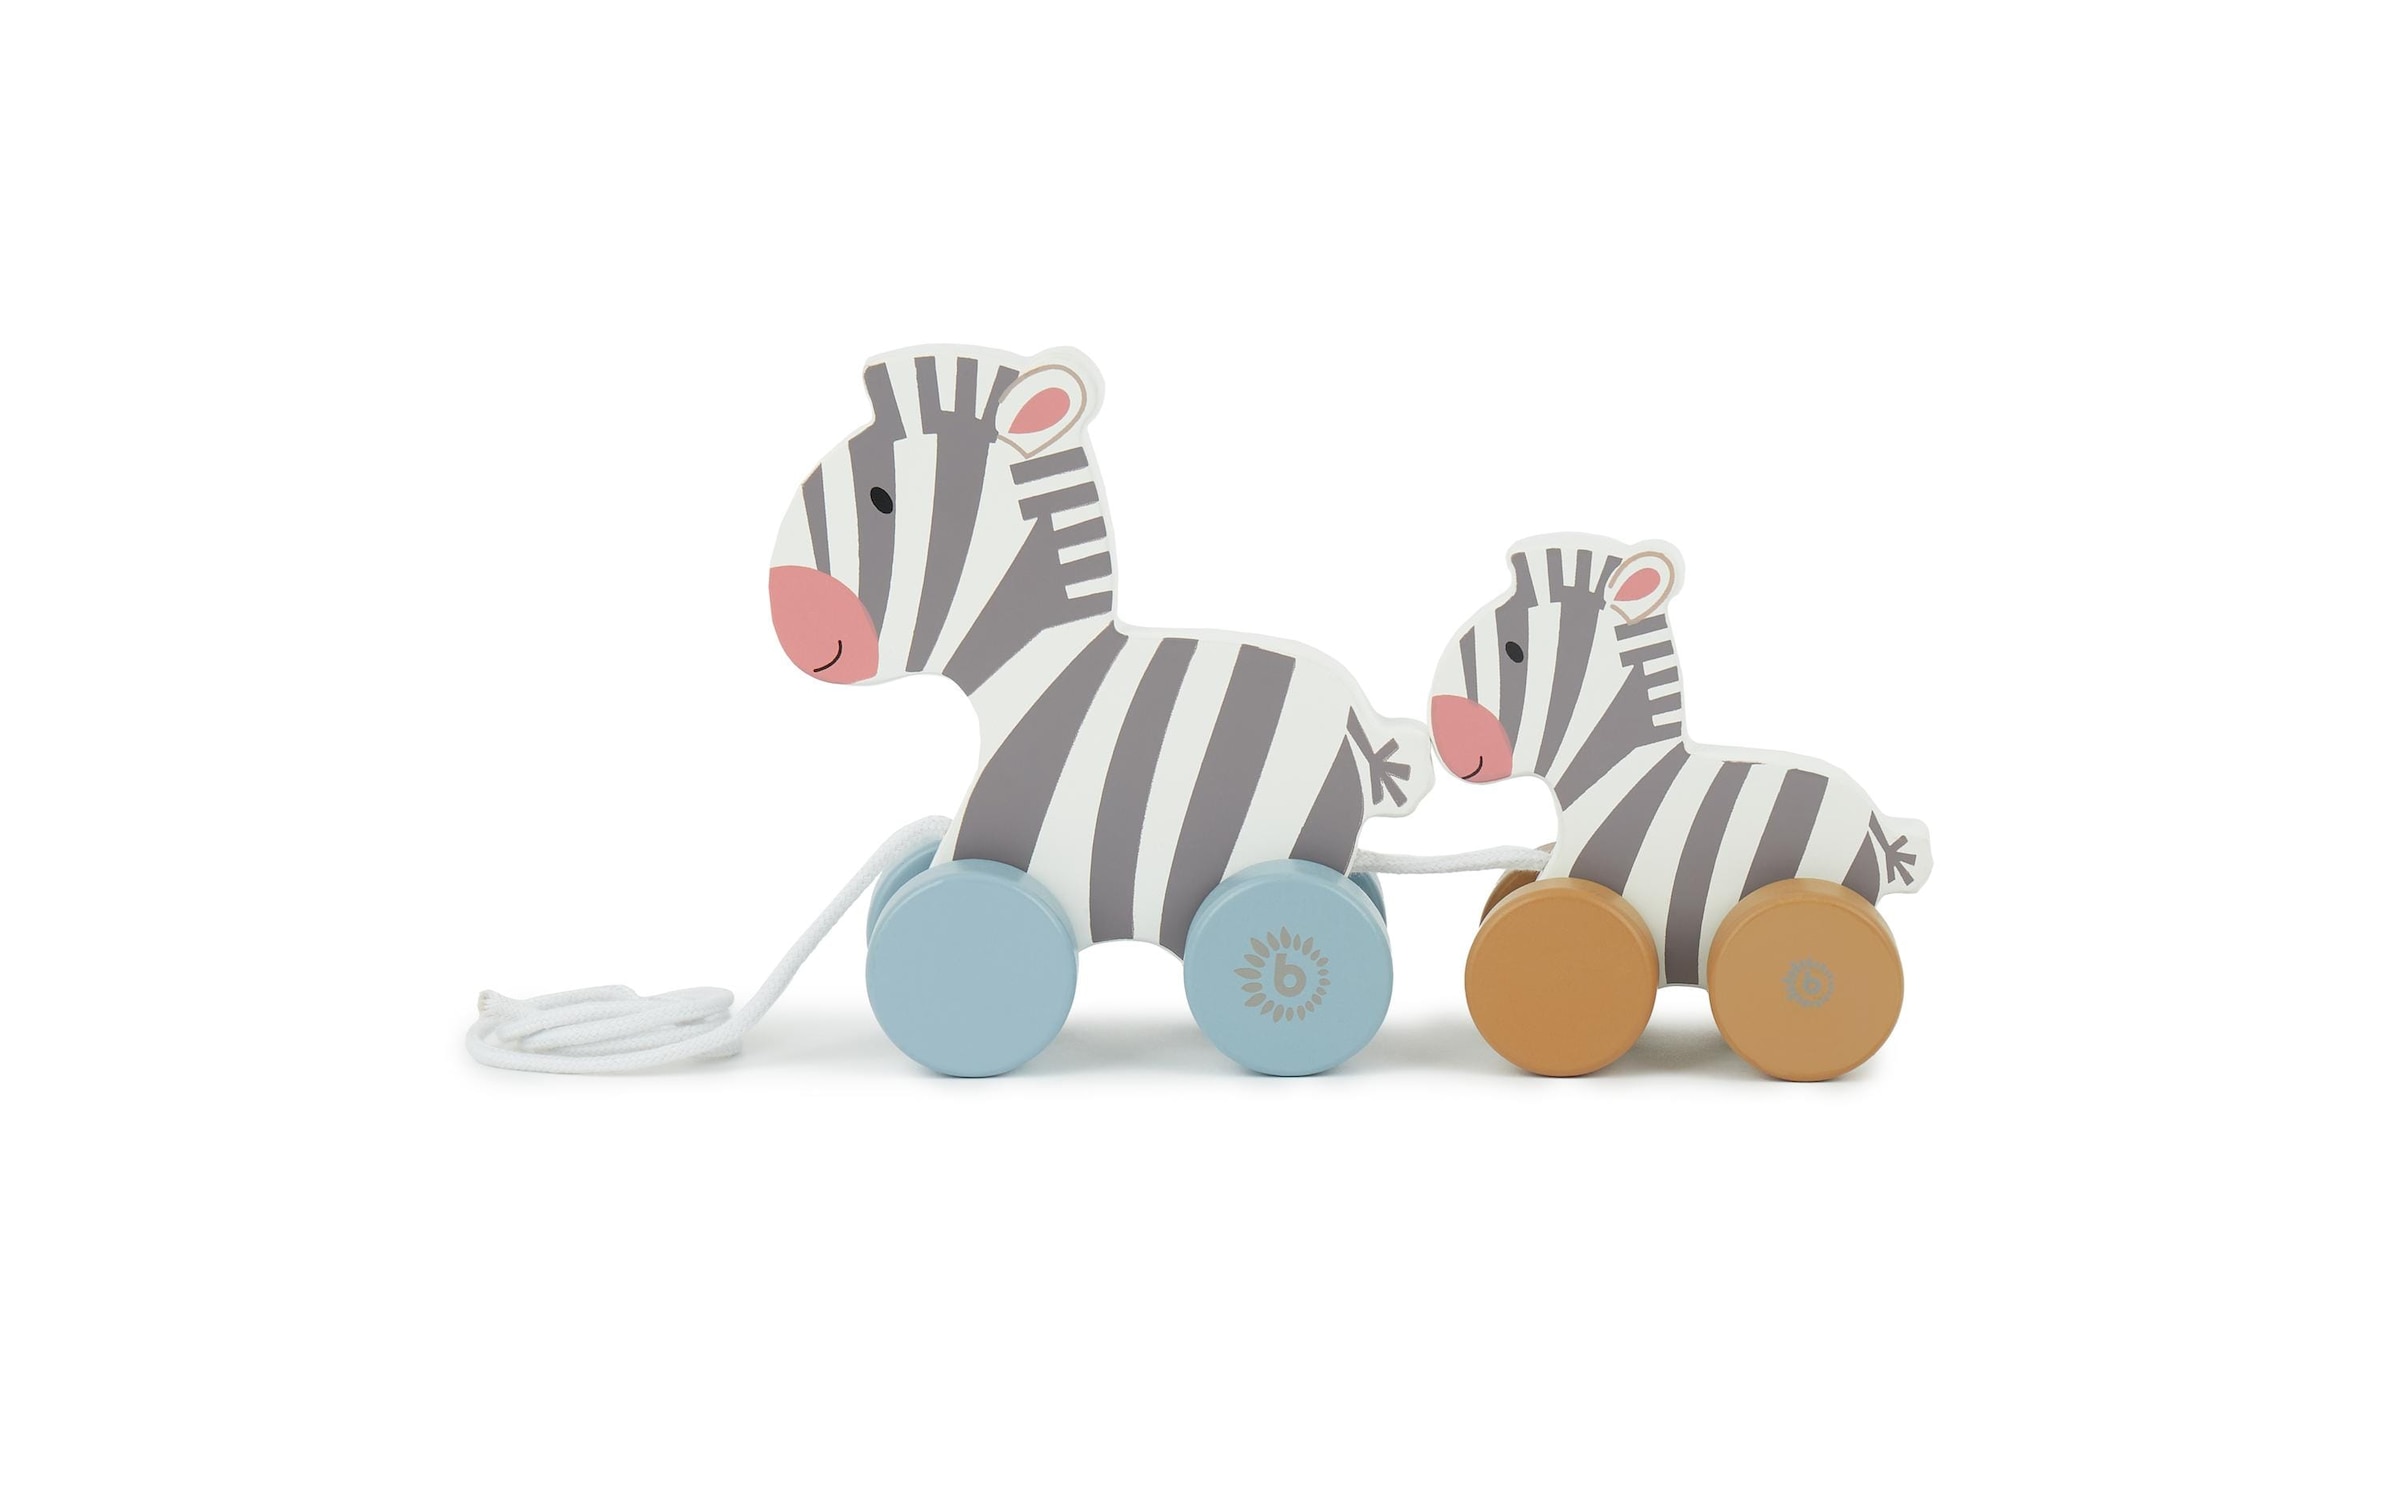 BIECO Nachziehspielzeug »Zebras«